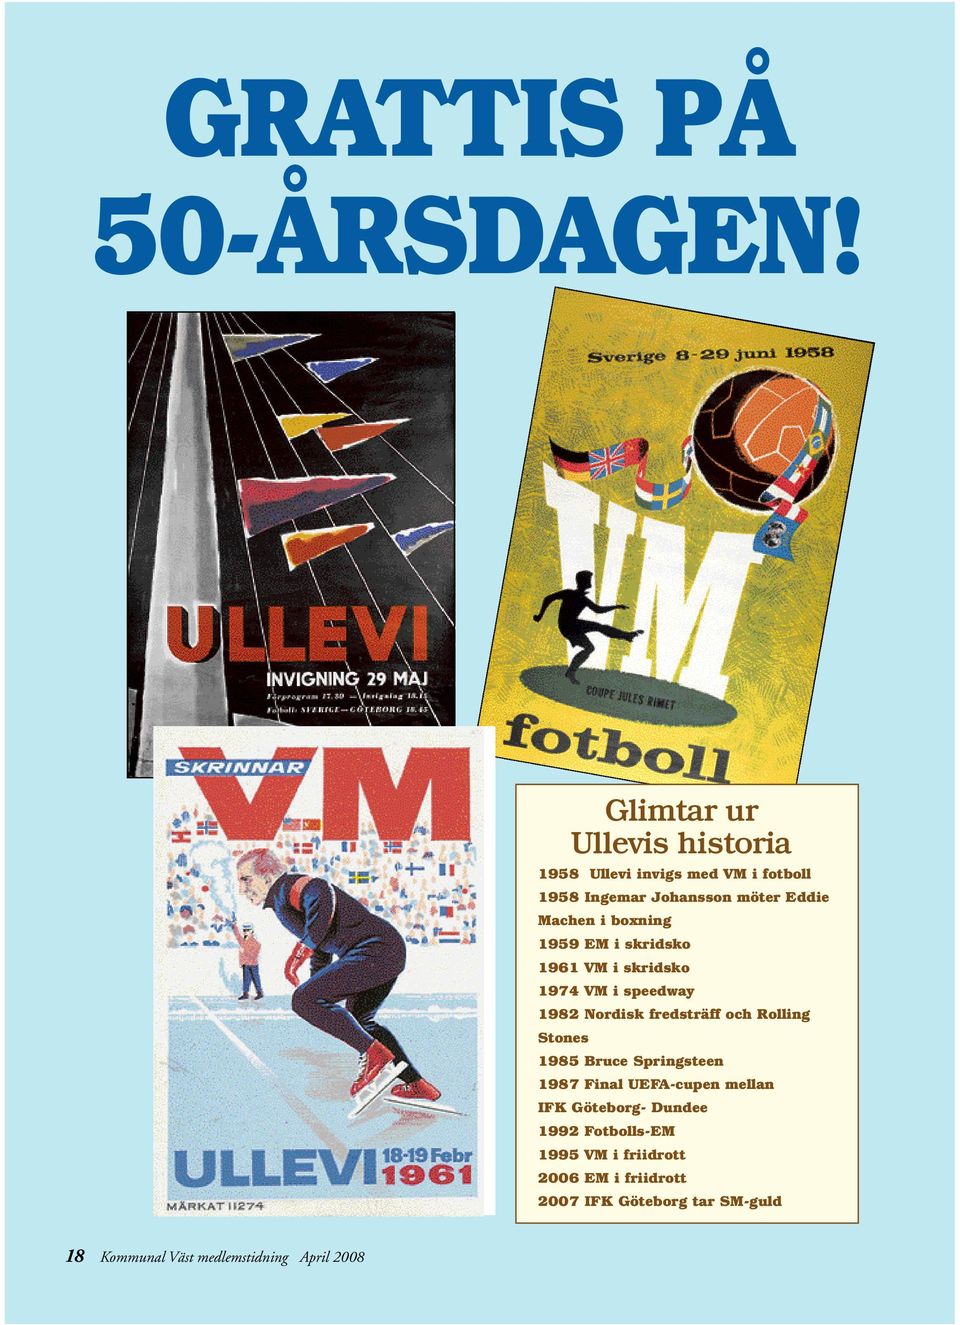 VM i skridsko 1974 VM i speedway 1982 Nordisk fredsträff och Rolling Stones Glimtar ur Ullevis historia 1985